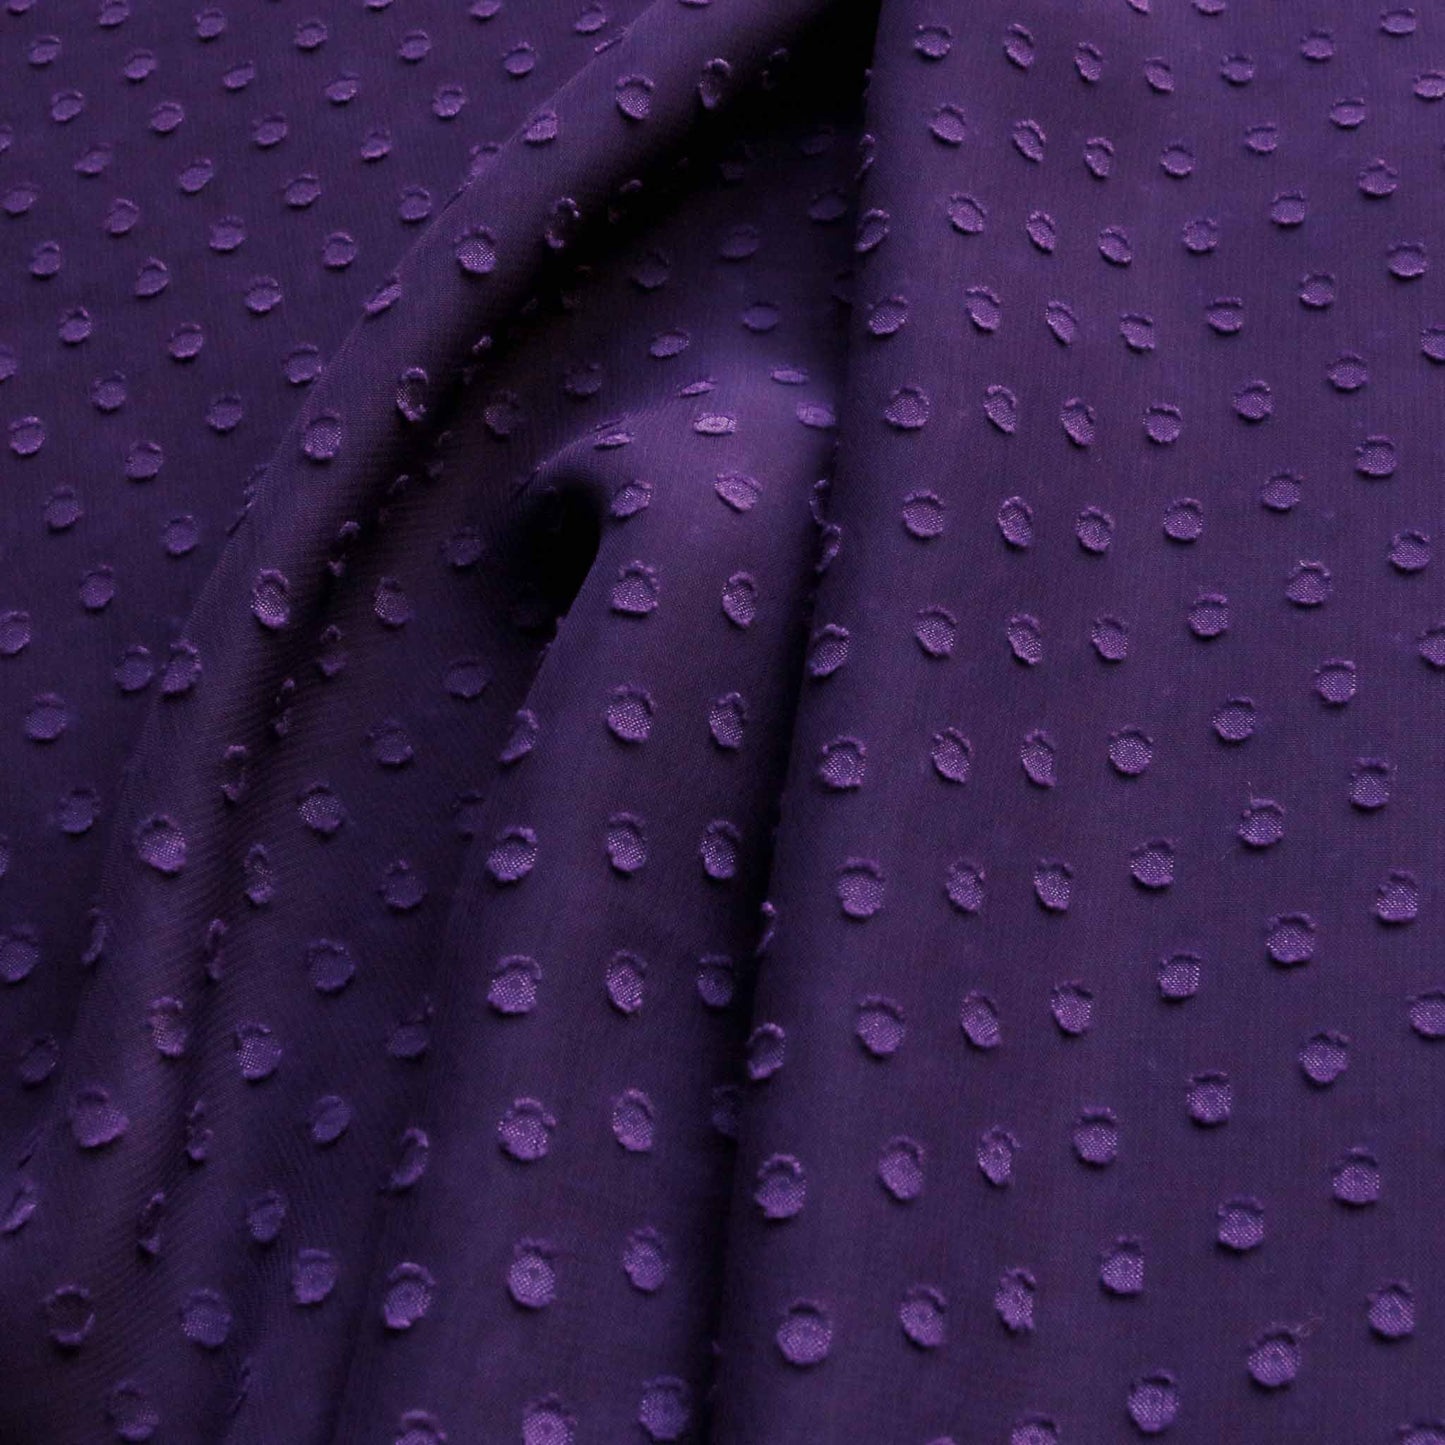 swiss clip purpl chiffon with jacquard polka dot pattern dressmaking fabric